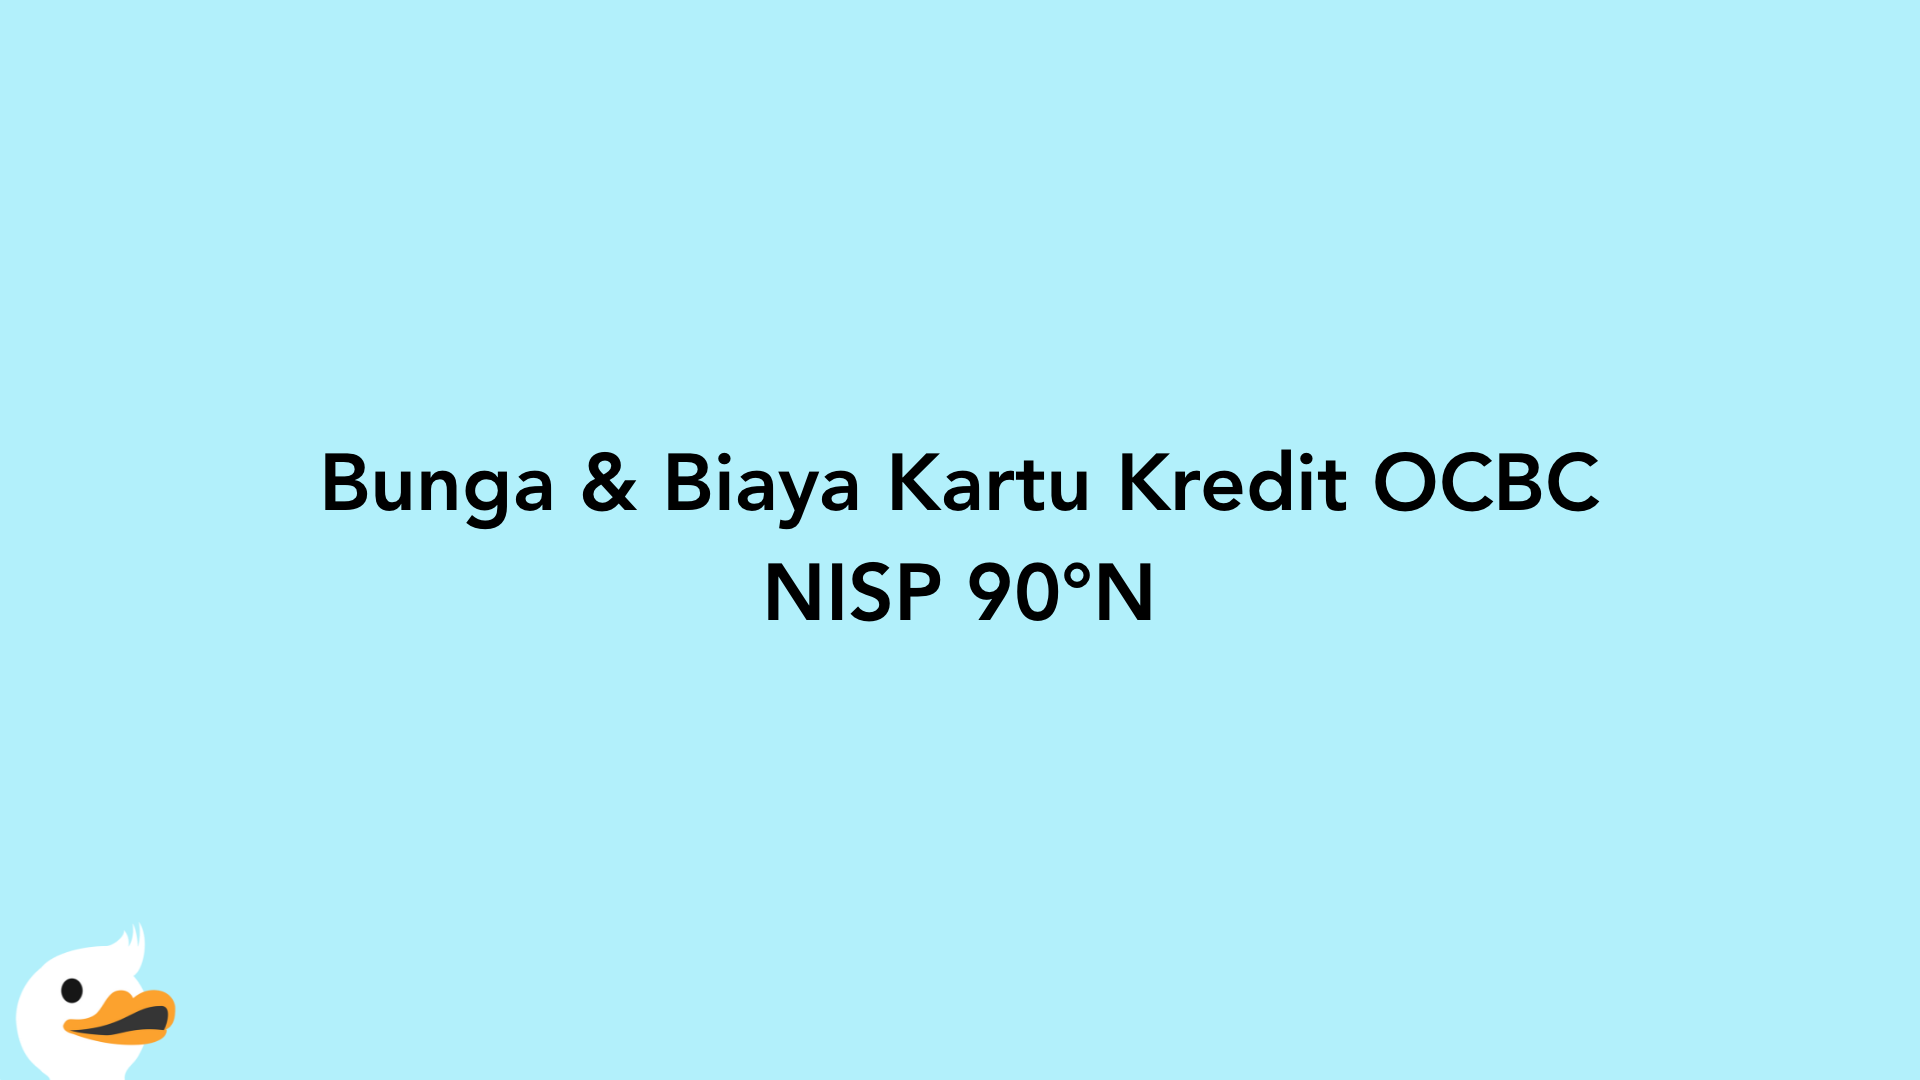 Bunga & Biaya Kartu Kredit OCBC NISP 90°N